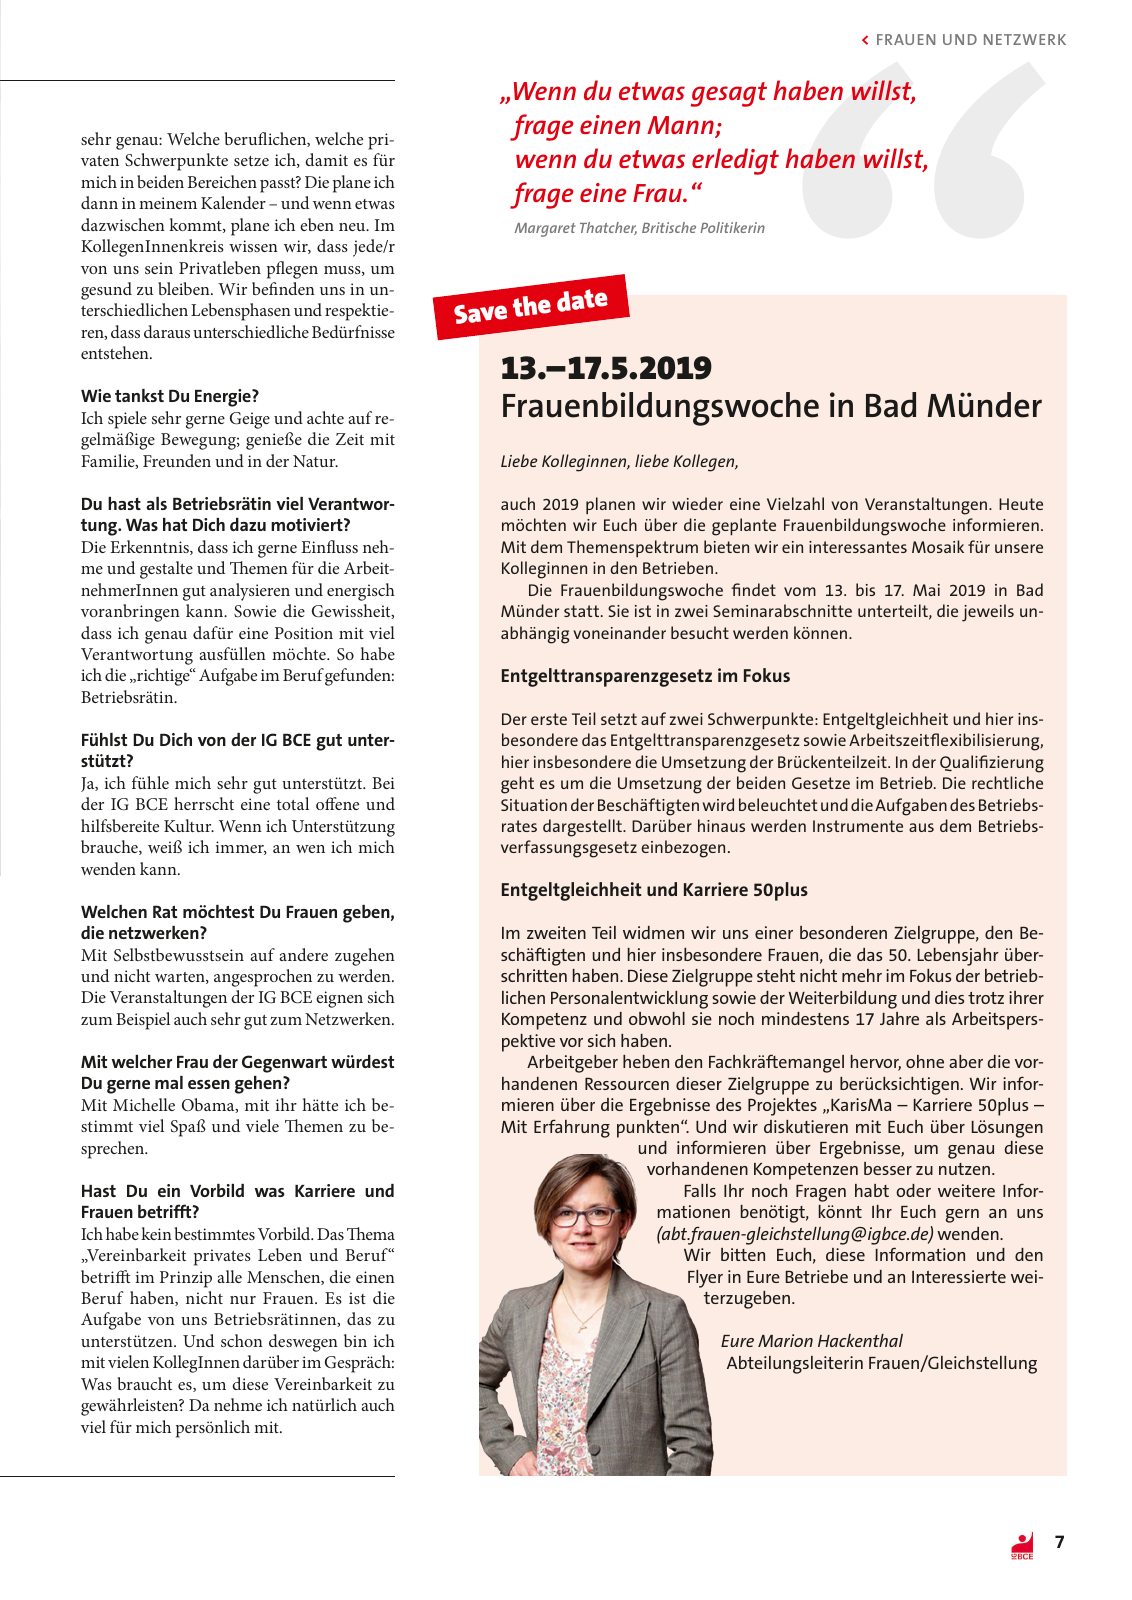 Vorschau IG BCE Klara - Winter 2019 Seite 7